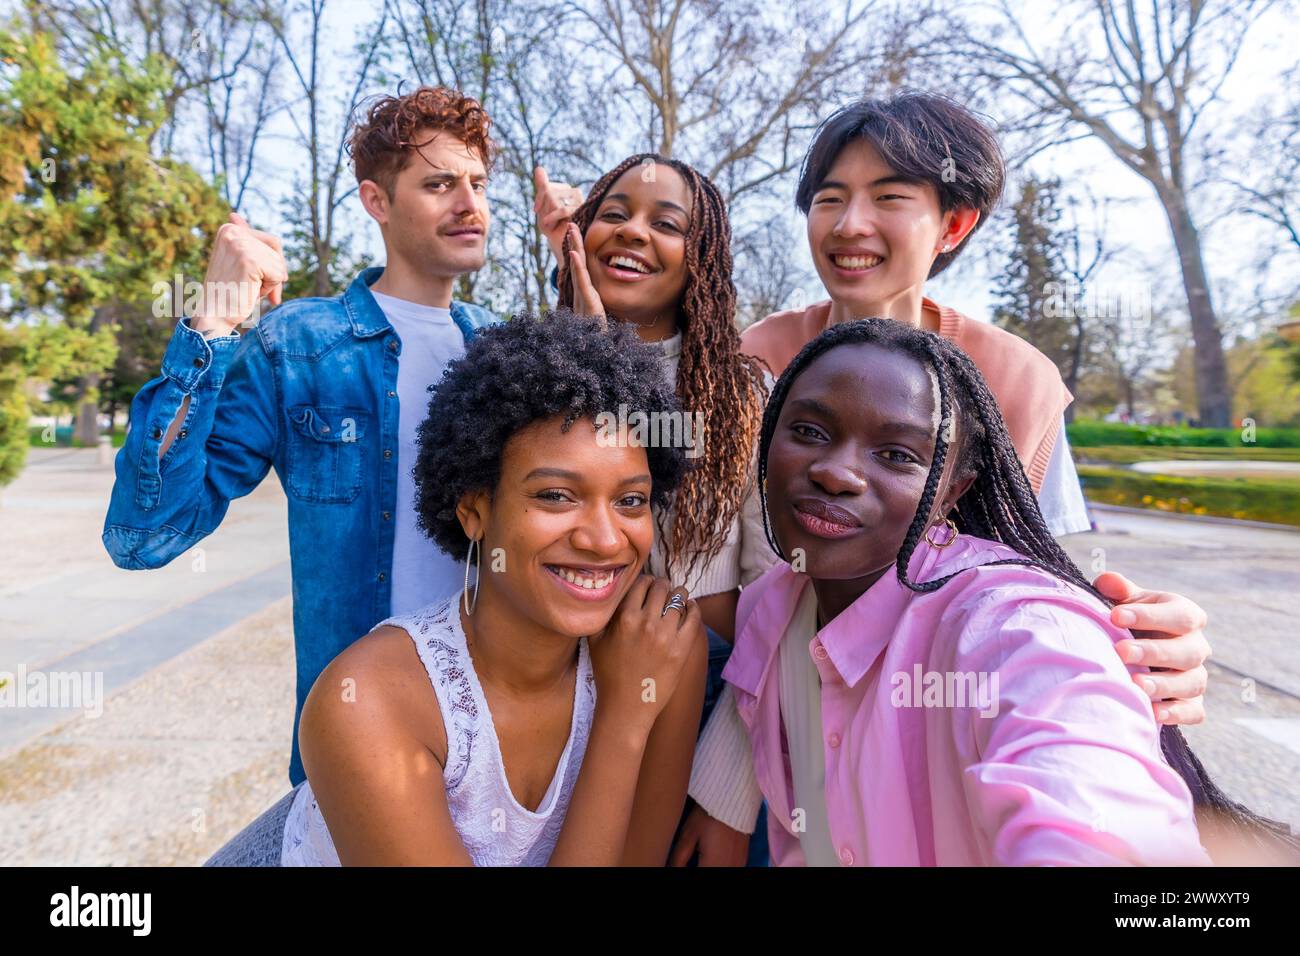 Persönliche Perspektive einer Gruppe junger, glücklicher und vielfältiger Freunde, die ein Selfie in einem Park machen Stockfoto